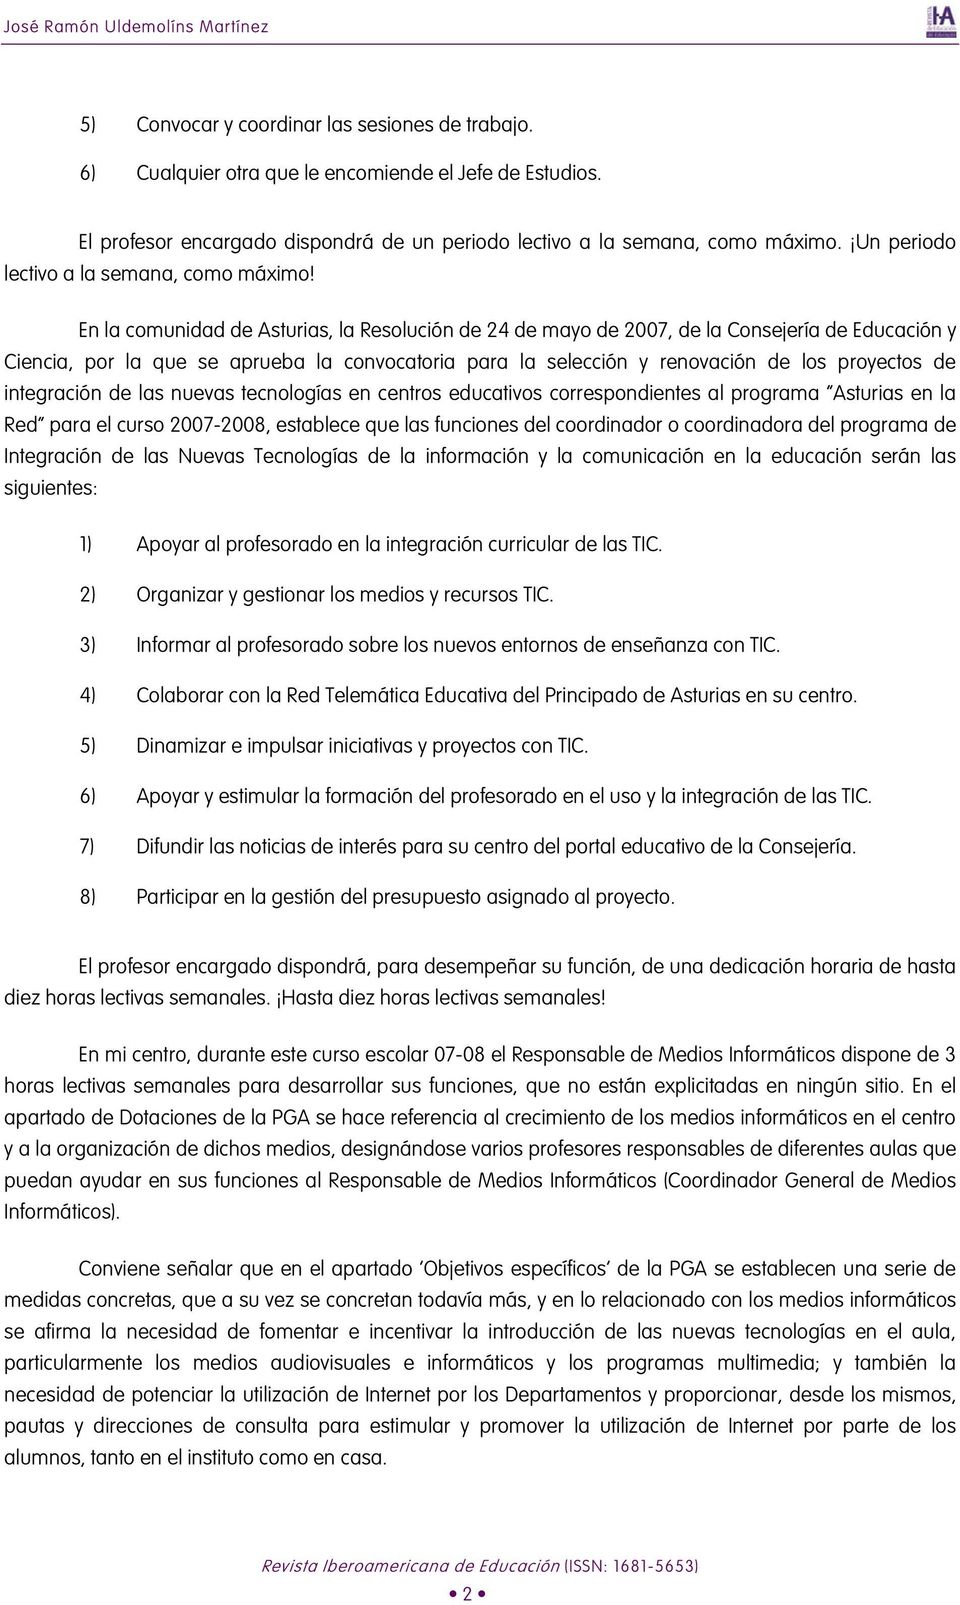 En la comunidad de Asturias, la Resolución de 24 de mayo de 2007, de la Consejería de Educación y Ciencia, por la que se aprueba la convocatoria para la selección y renovación de los proyectos de